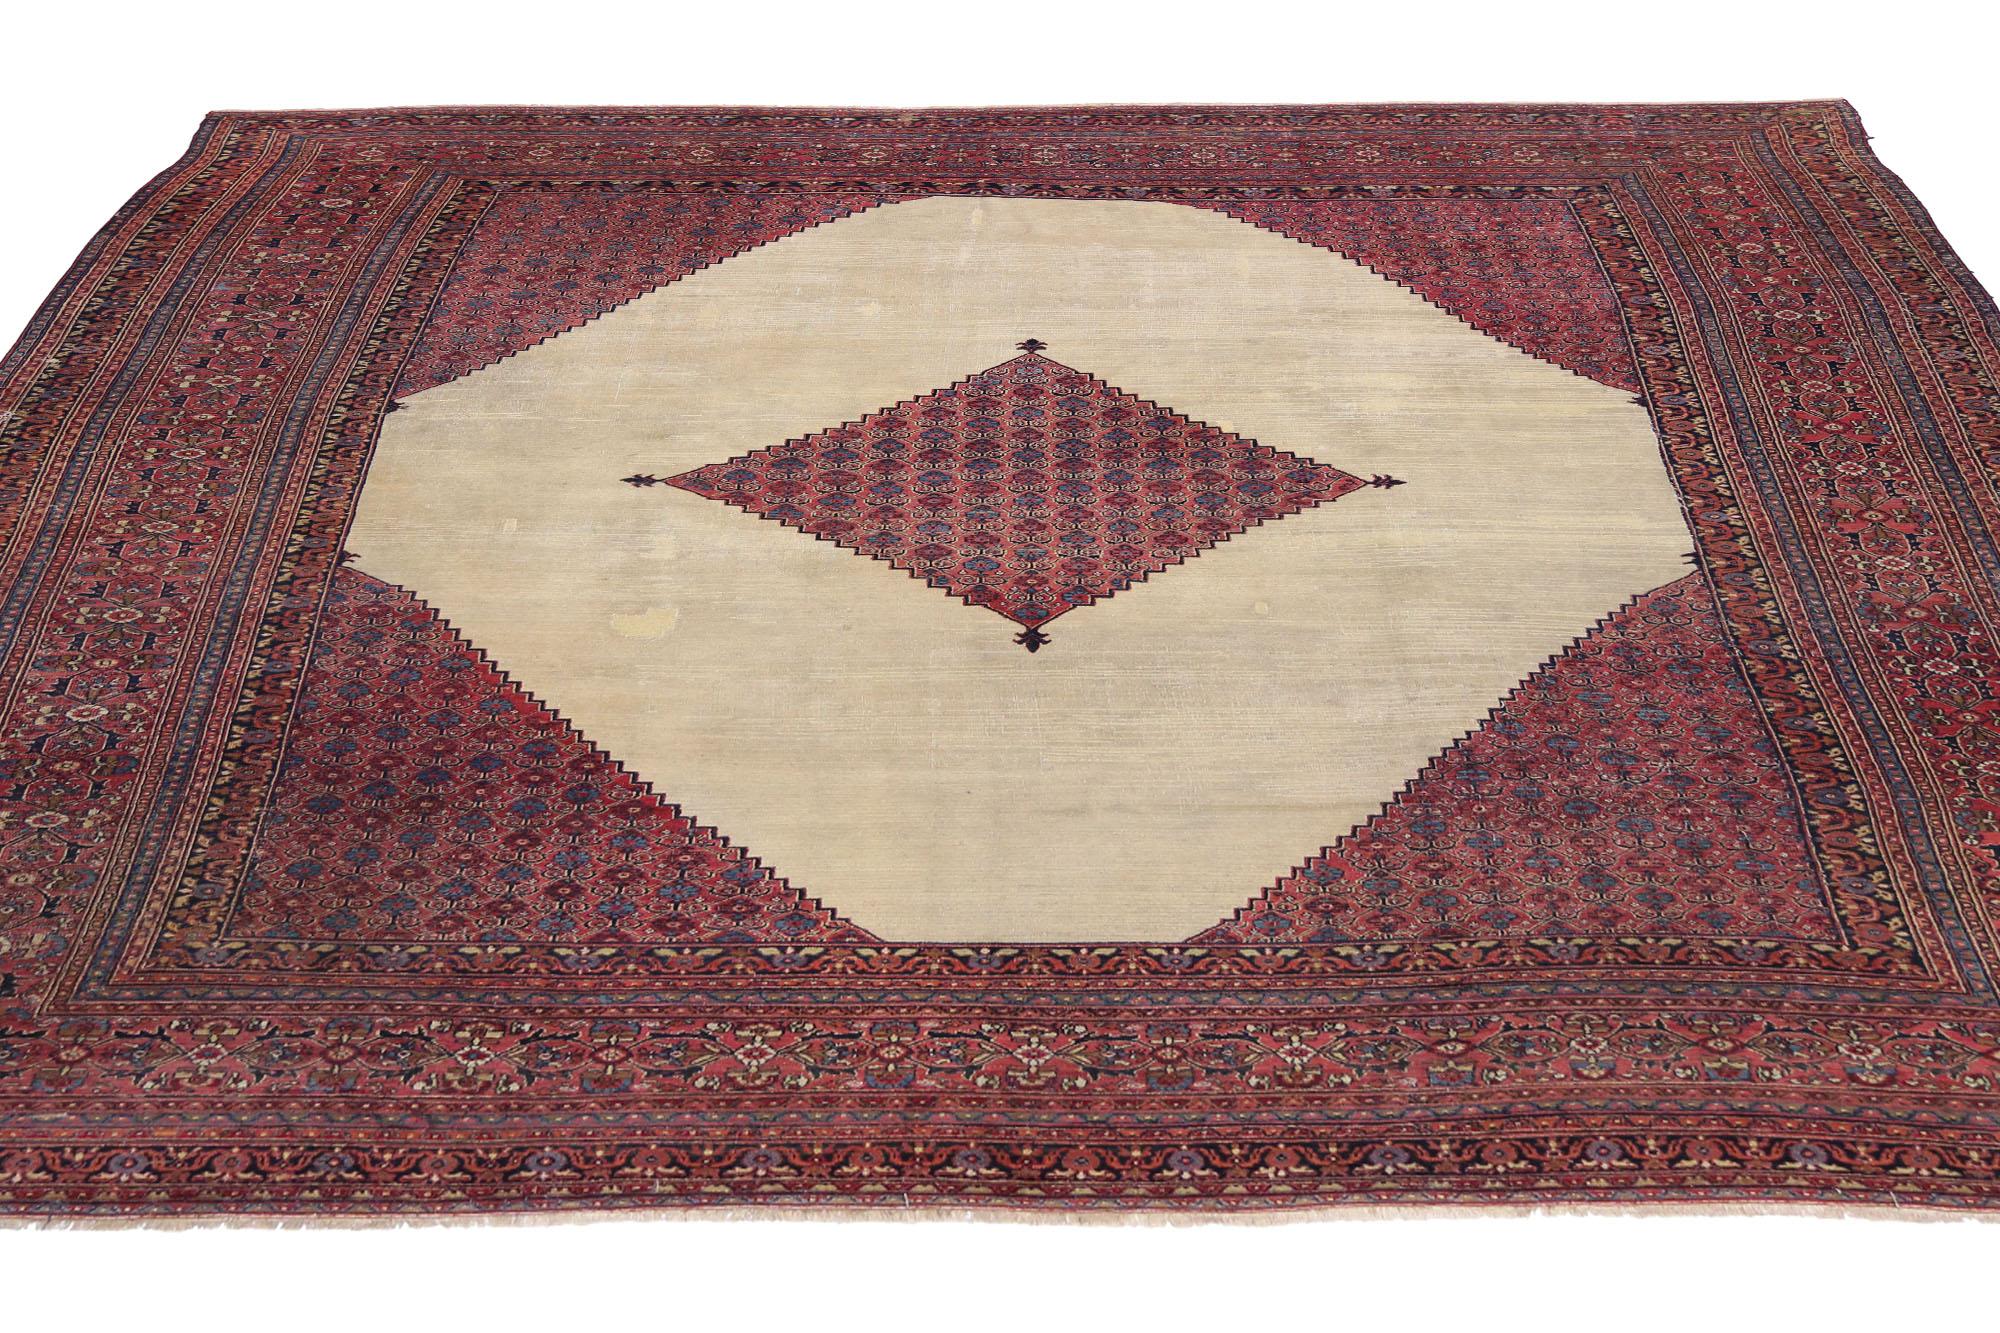 74232 Antique Persian Khorassan Rug Hotel Lobby Size Carpet 13'09 x 15'09.
Un design intemporel et une beauté sans effort avec une sensibilité rustique, ce tapis antique persan Khorassan en laine noué à la main est prêt à impressionner. Le design